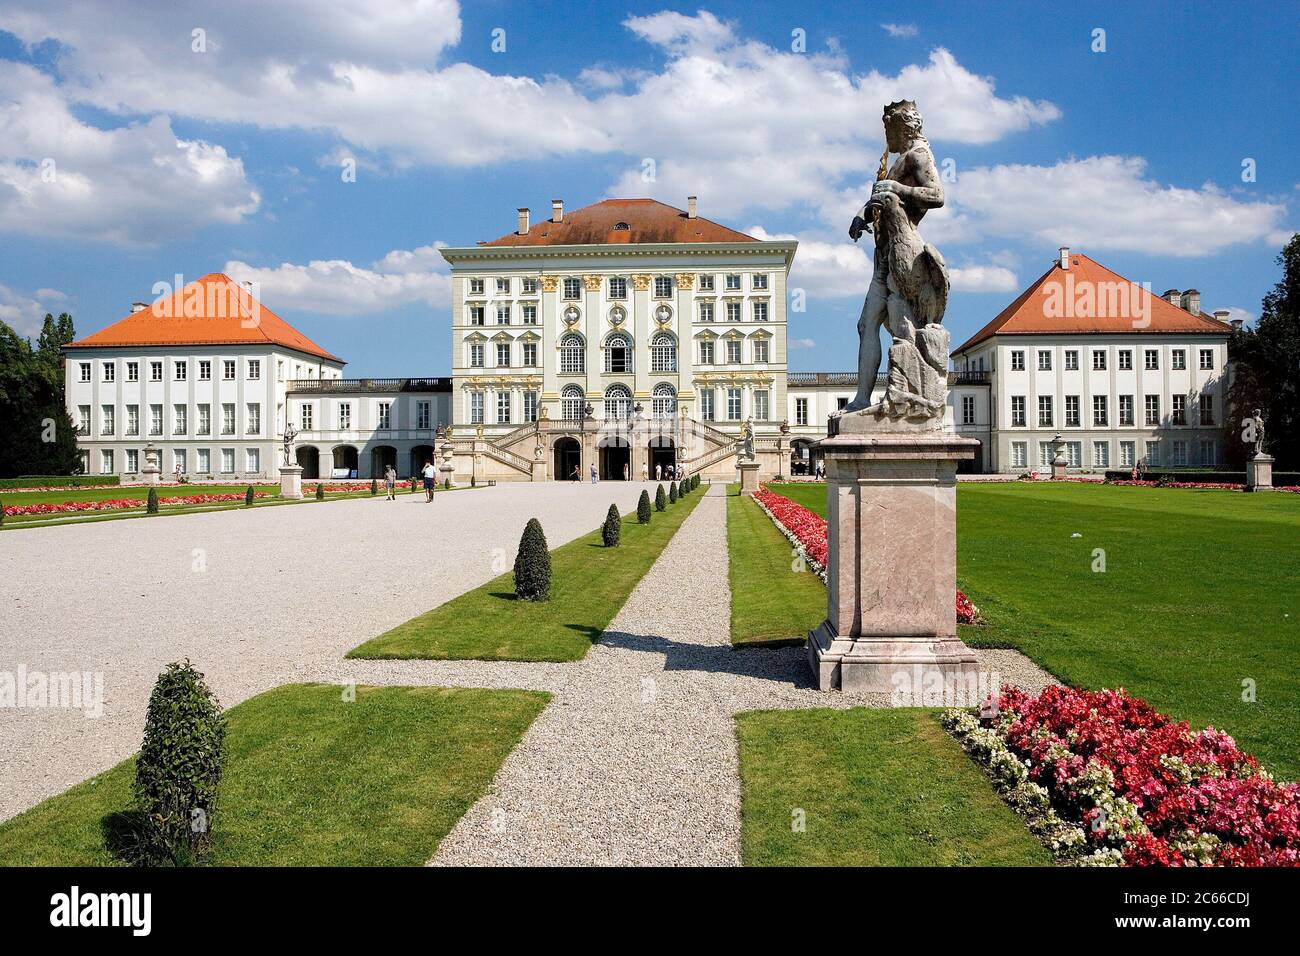 München, Schloss Nymphenburg, Baubeginn - 1664 - 1675, nach dem Vorbild des piemontesischen Schlosses Venaria, Blick auf das Schloss aus dem französischen Garten, einem der großen königlichen Paläste Europas Stockfoto